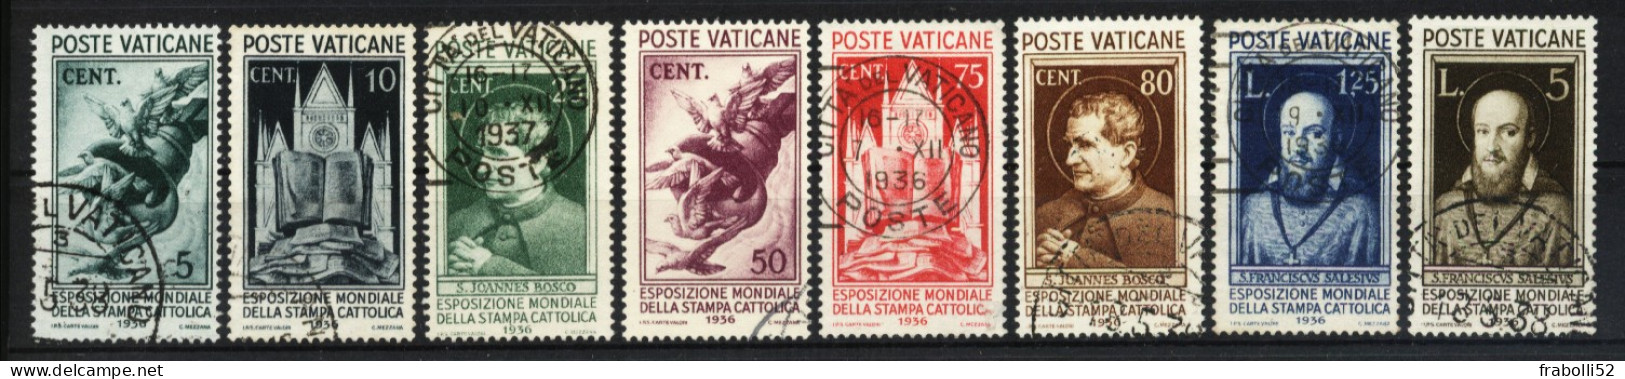 Vaticano Usati Di Qualità: N. 47-54 Stampa Cattolica - Usati